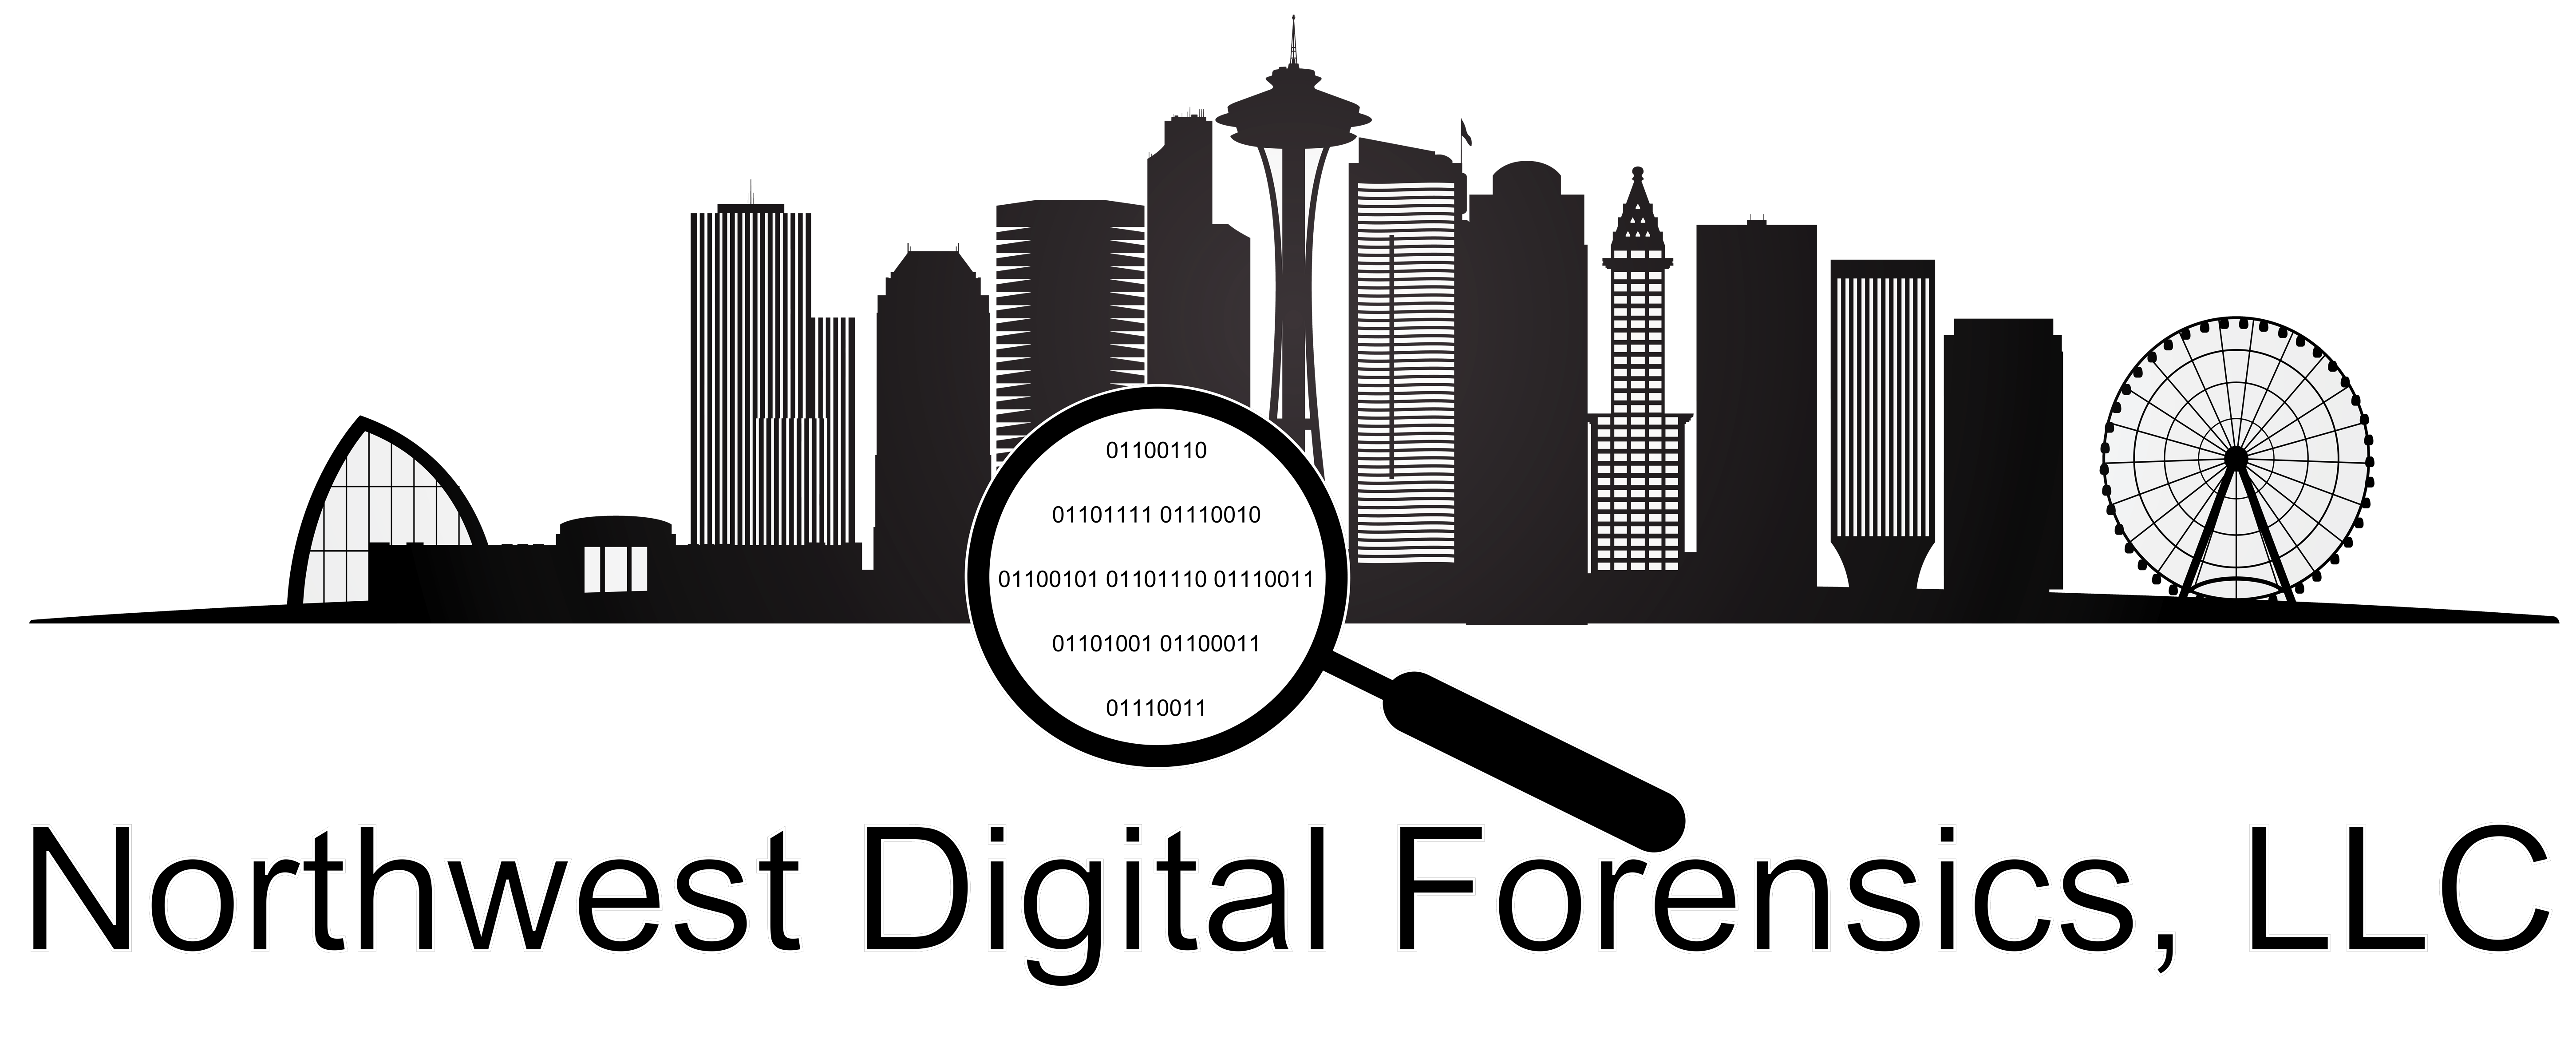 Northwest Digital Forensics, LLC logo